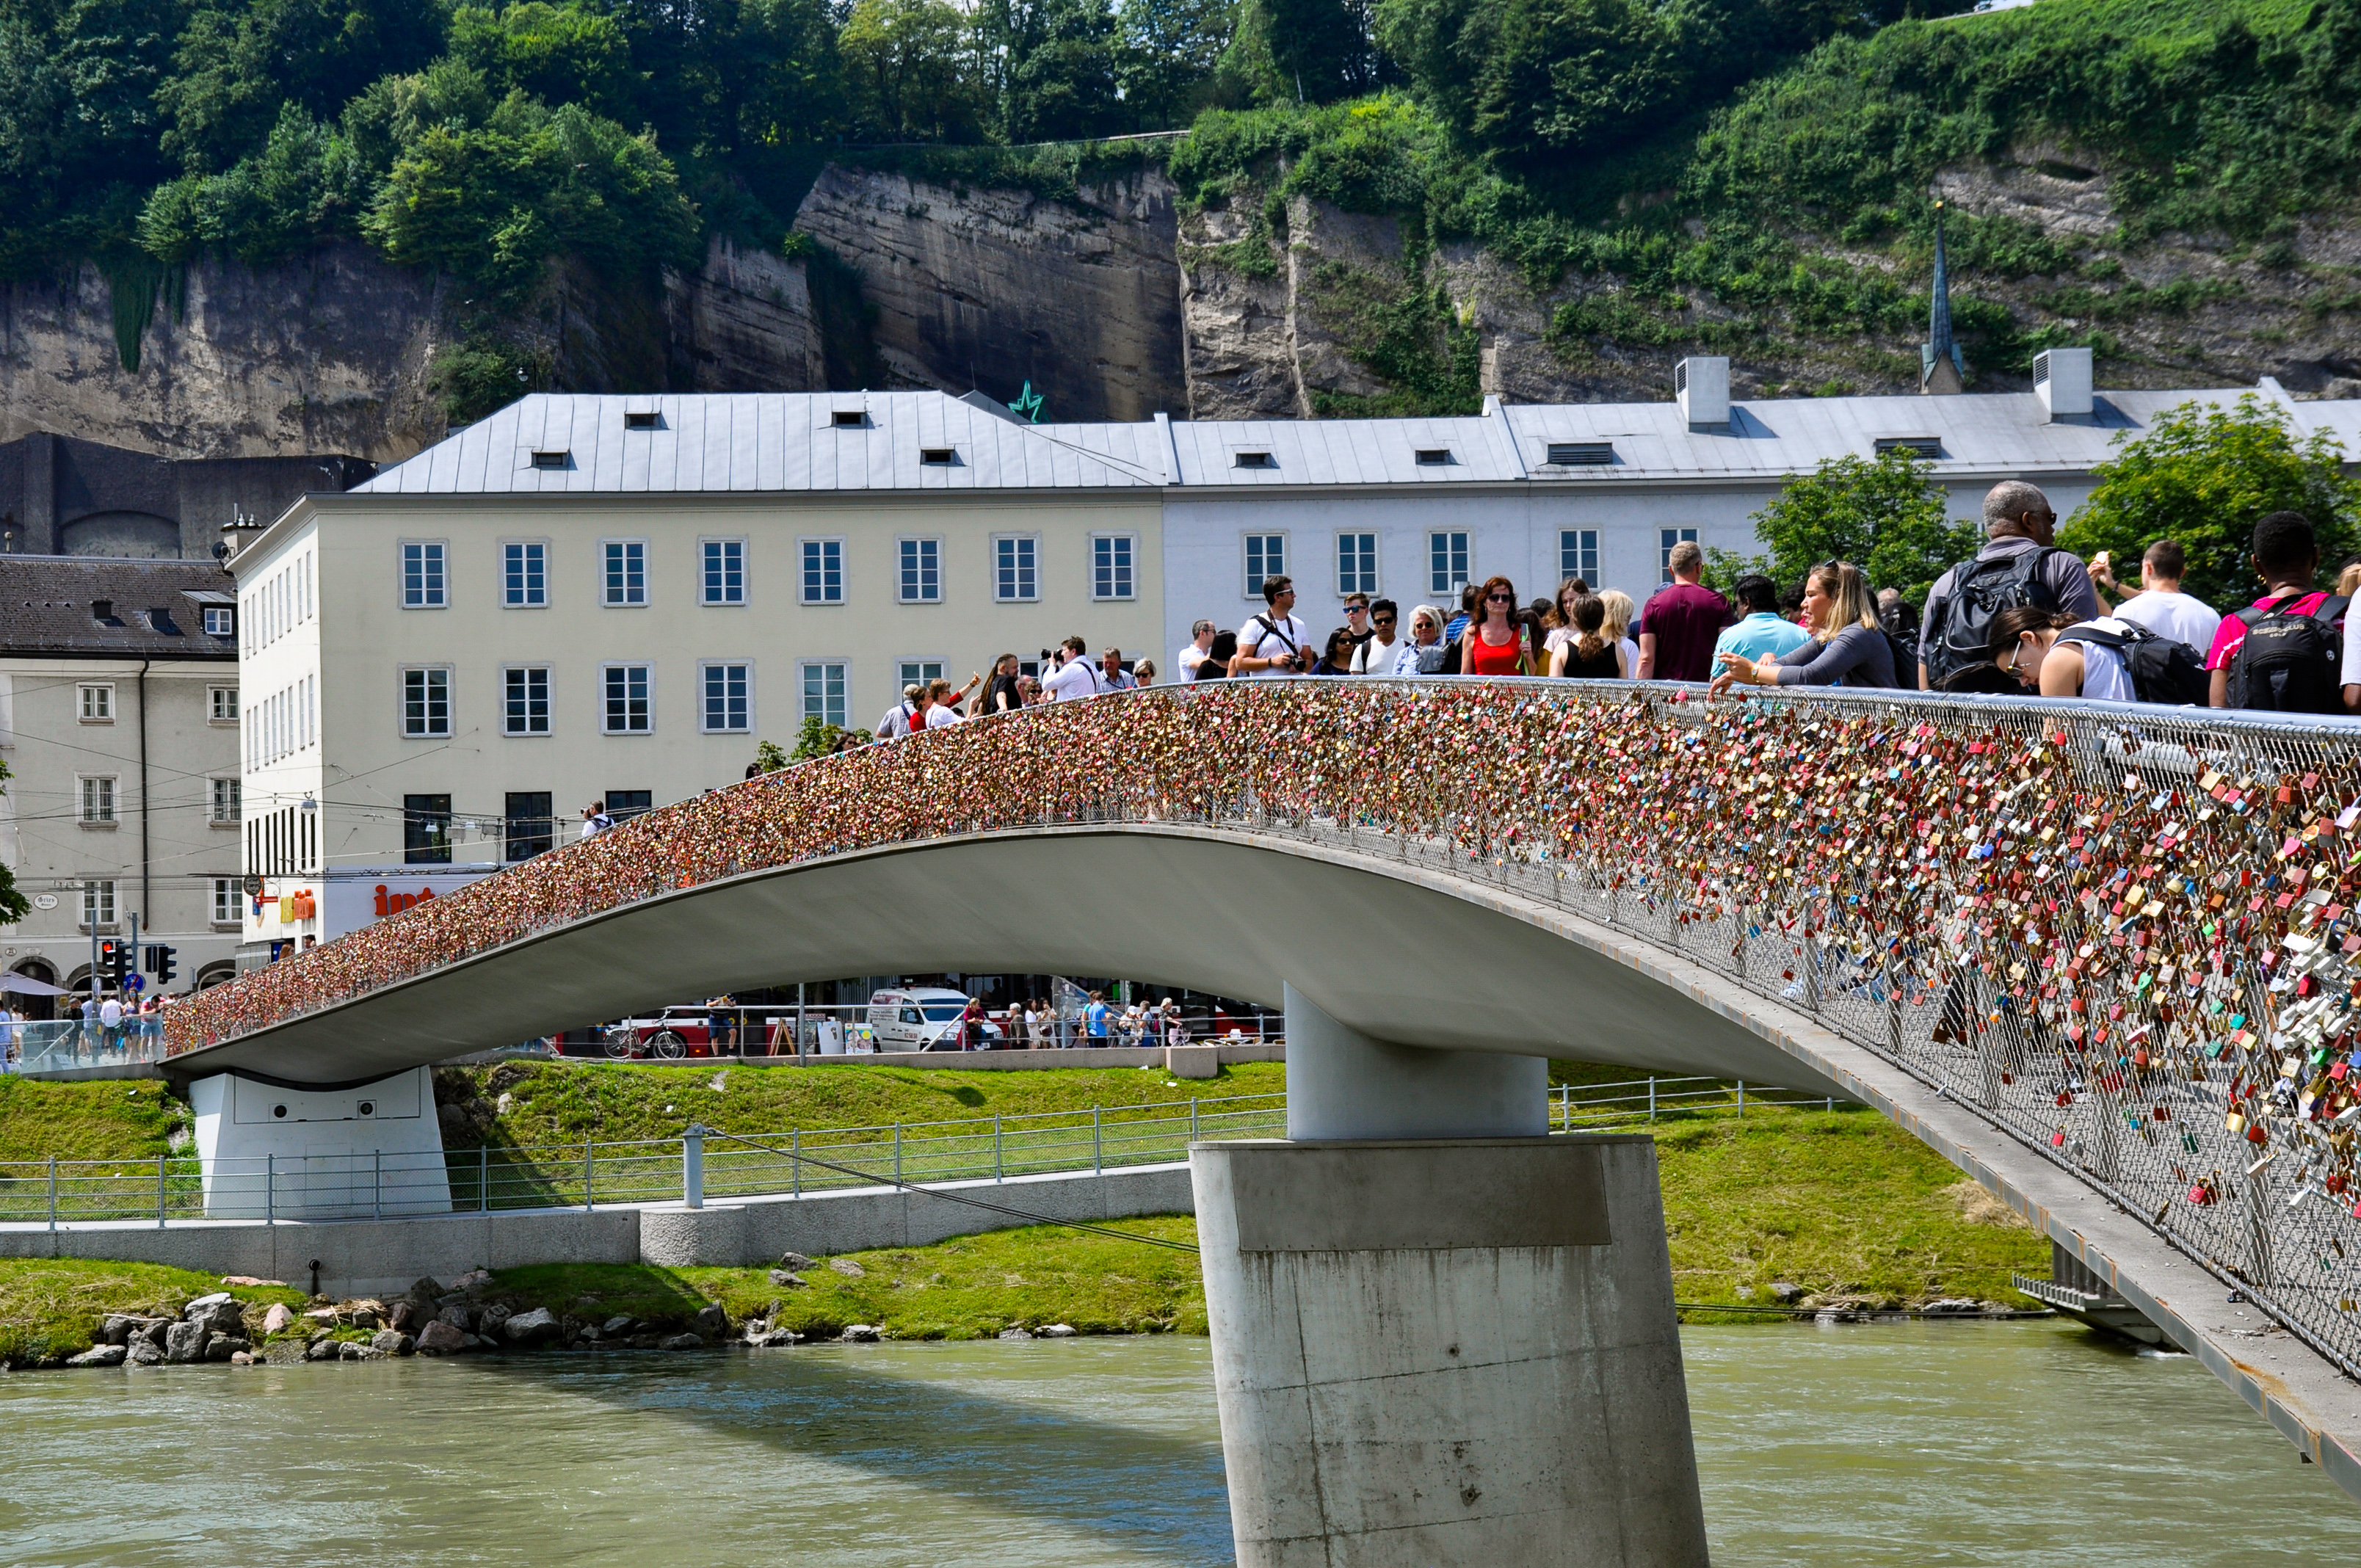 Bridge during Visit to Salzburg